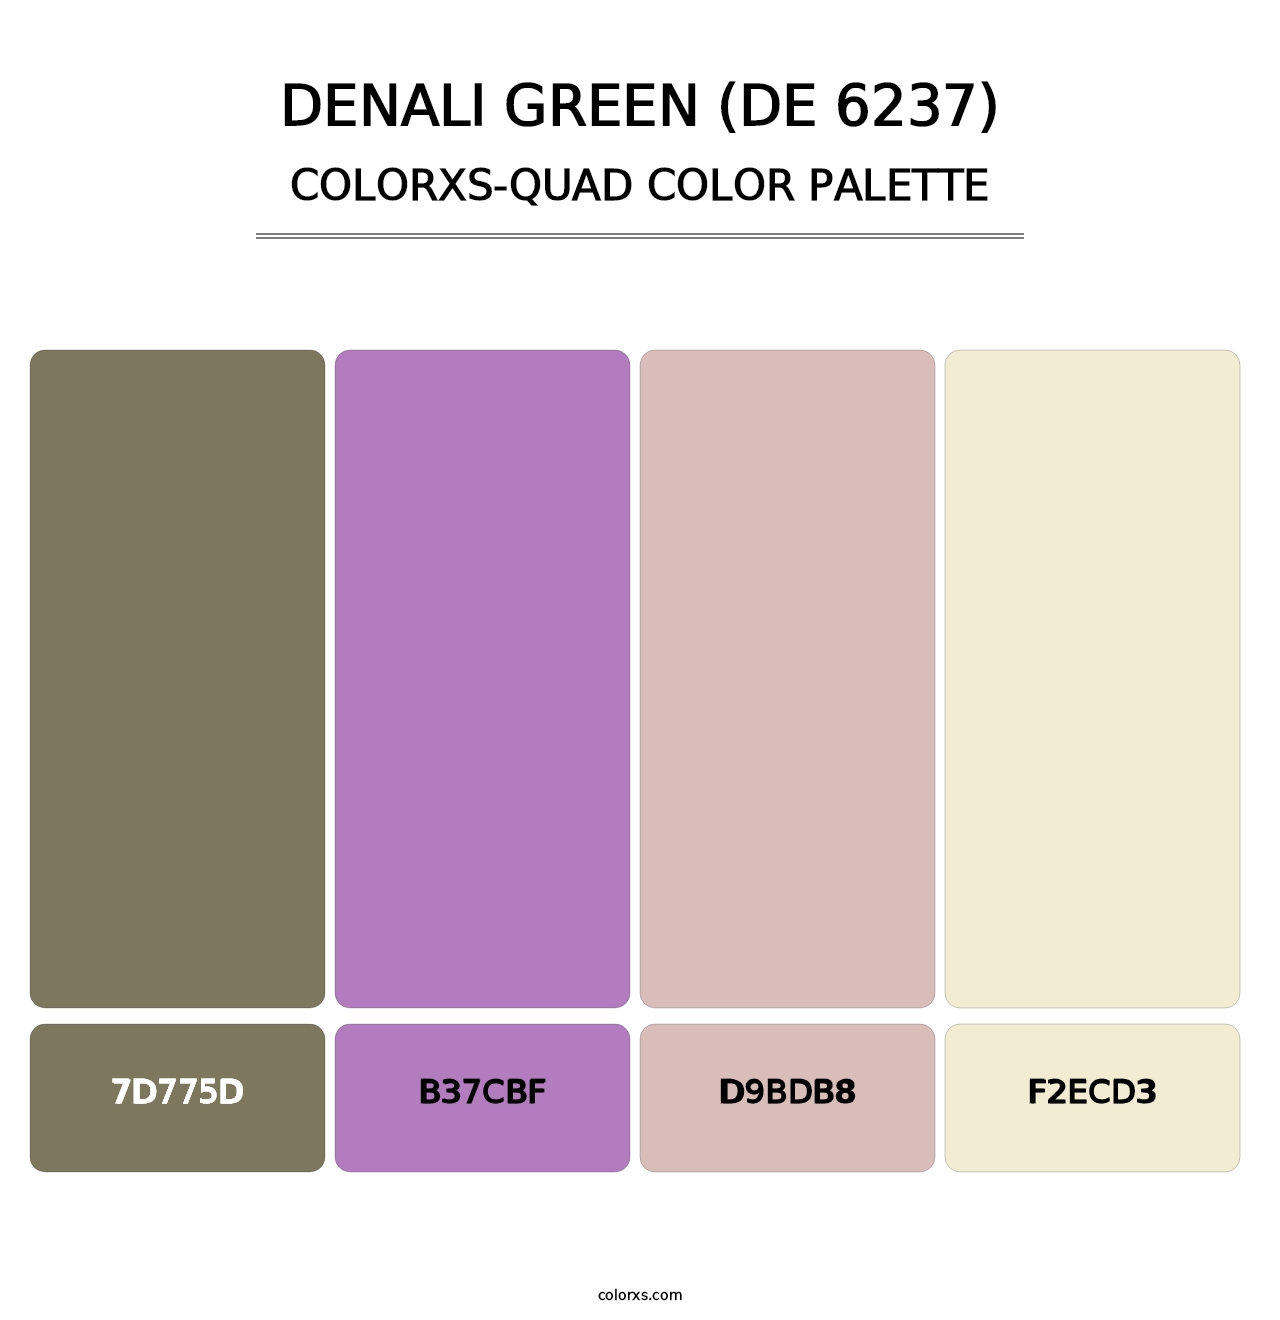 Denali Green (DE 6237) - Colorxs Quad Palette